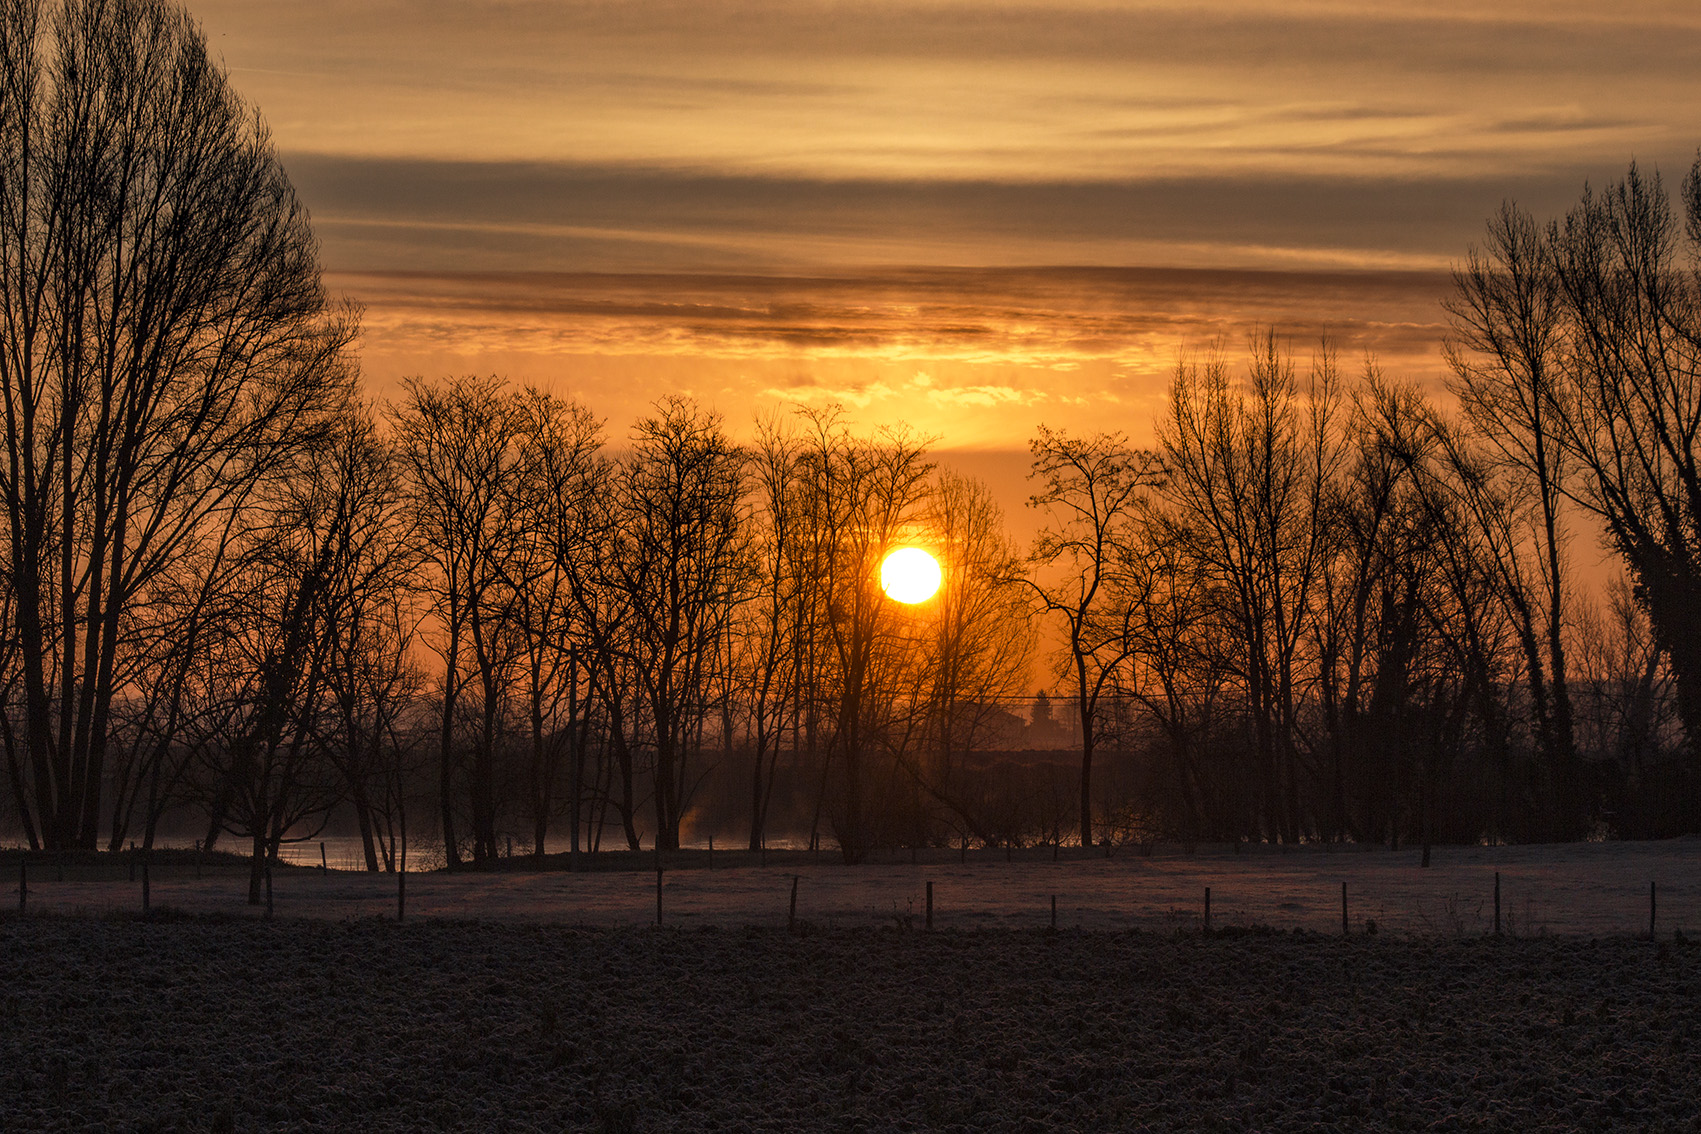 jolie photo de lever de soleil en hiver avec un ciel très orangé et le soleil entre les arbres